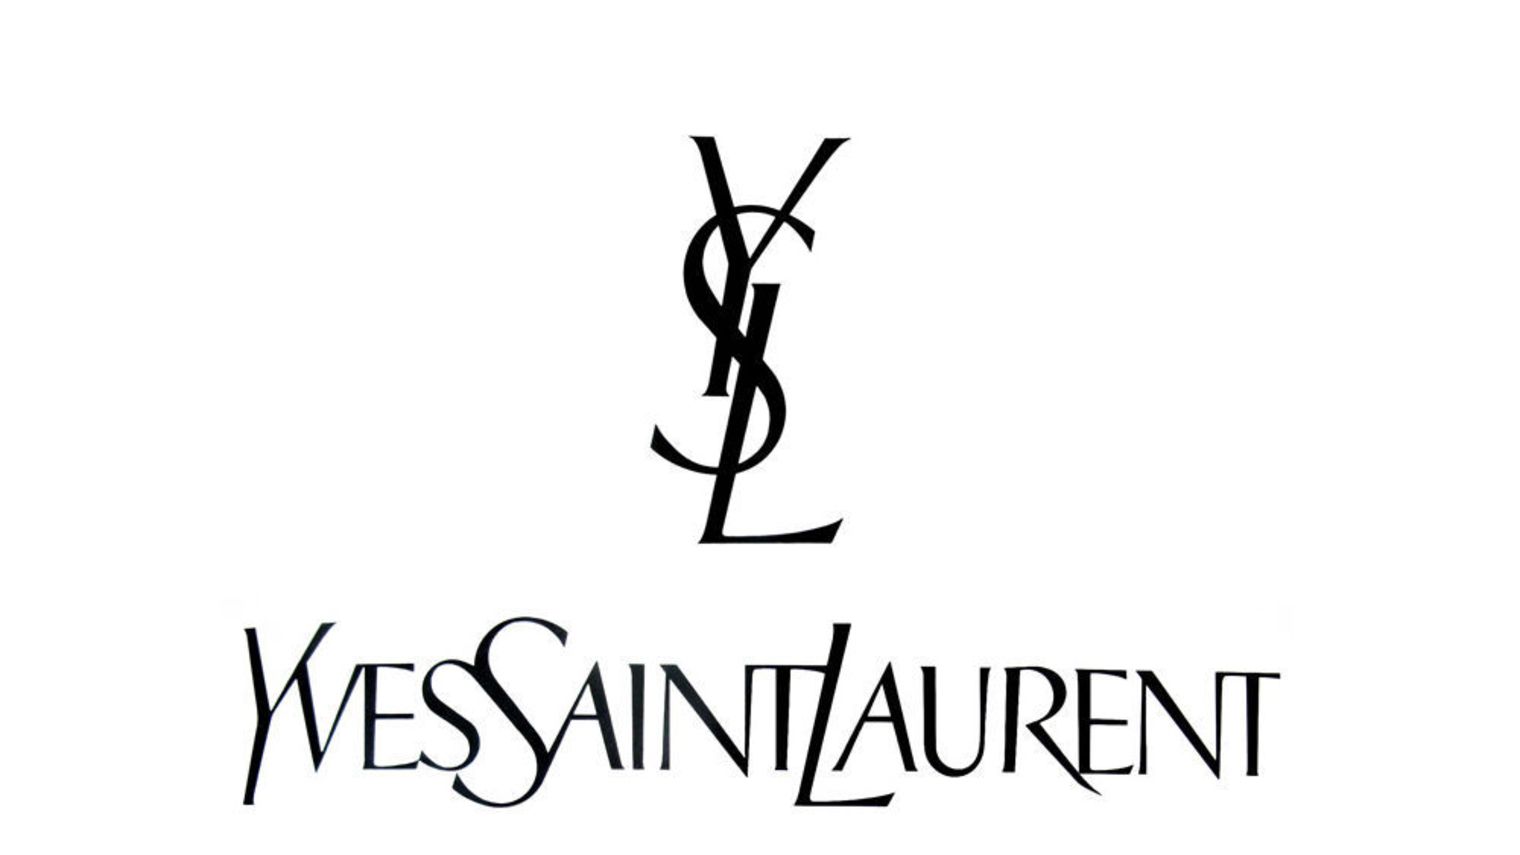 Yves-saint-laurent-logo-hedi-slimane_999850.jpg